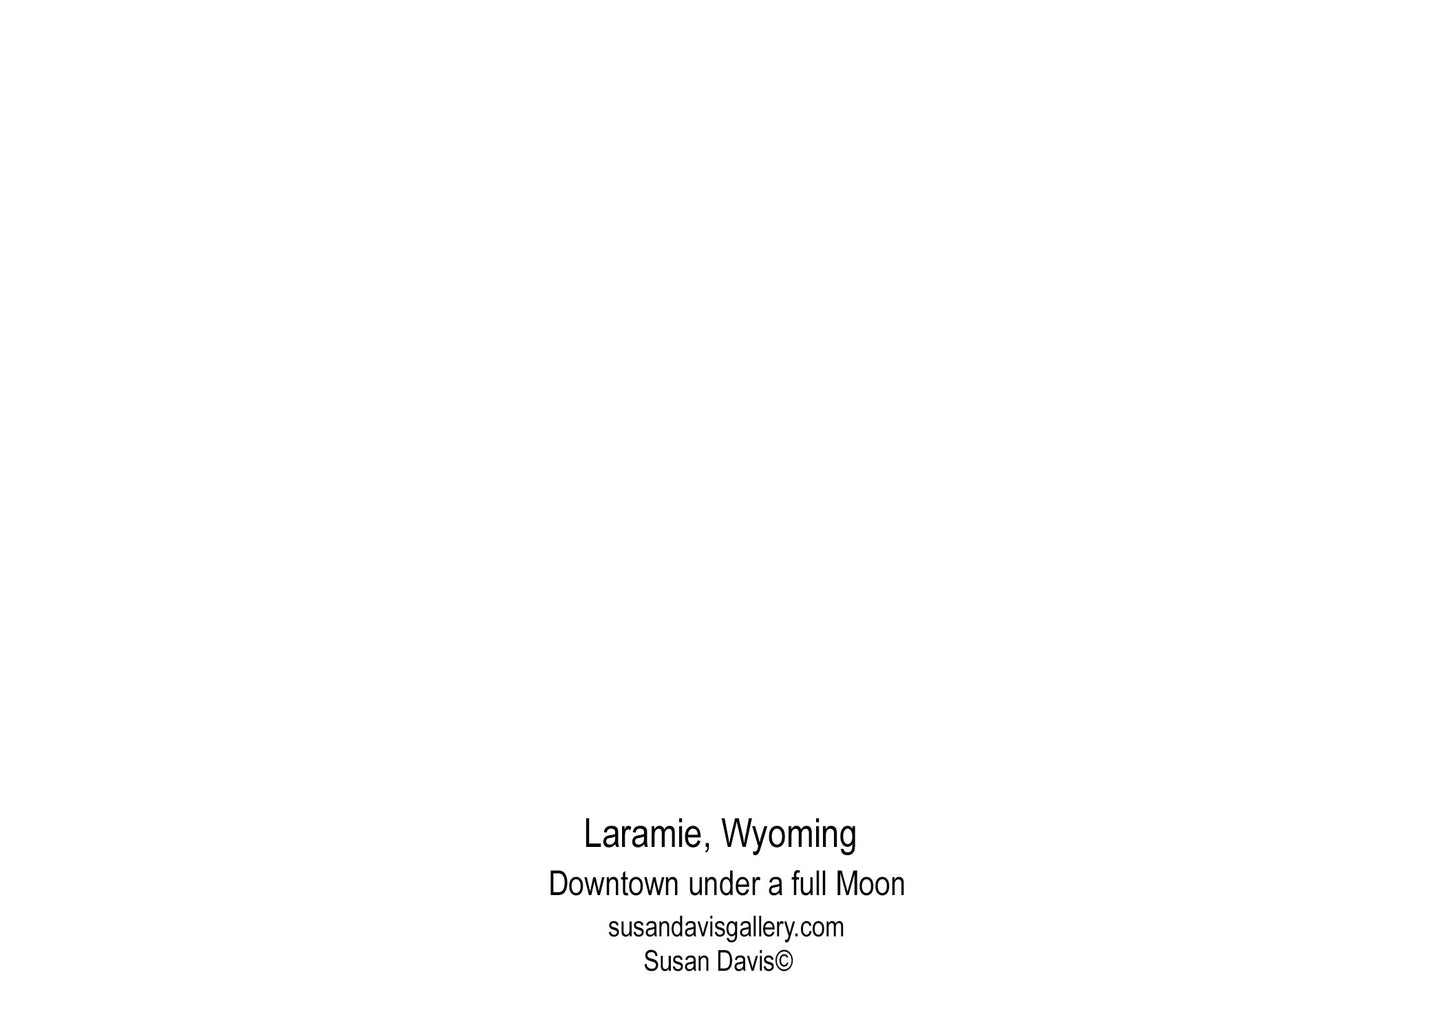 " Season's Greetings from Laramie Wyoming " Downtown Laramie Card